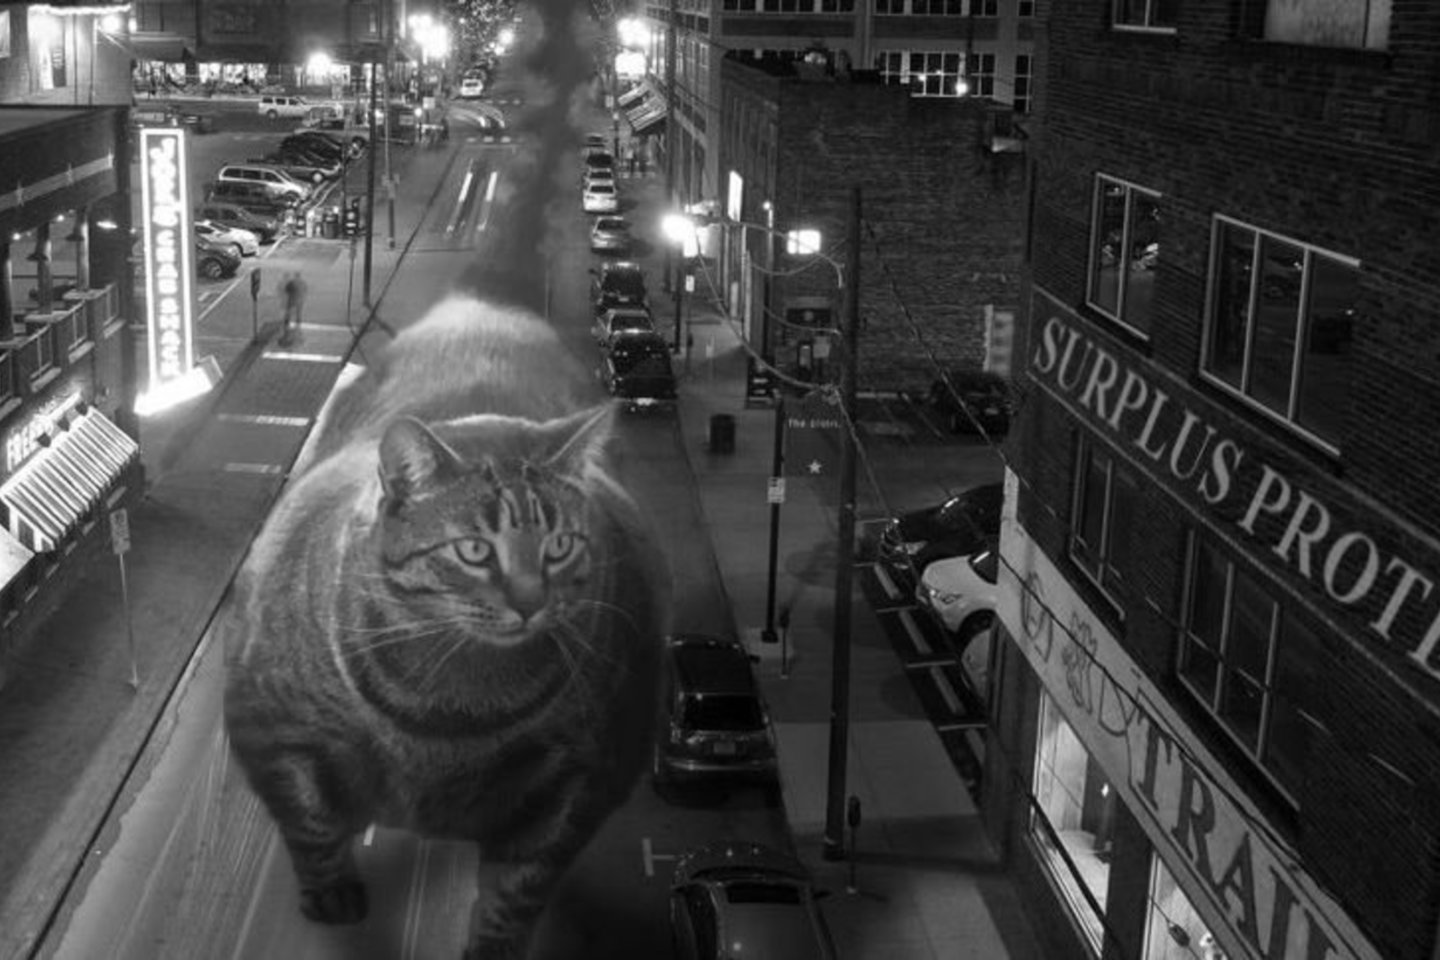  Raumeningasis katinas netrukus tapo ir memų herojumi.<br> Twitter.com/officialbuffcat nuotr. 